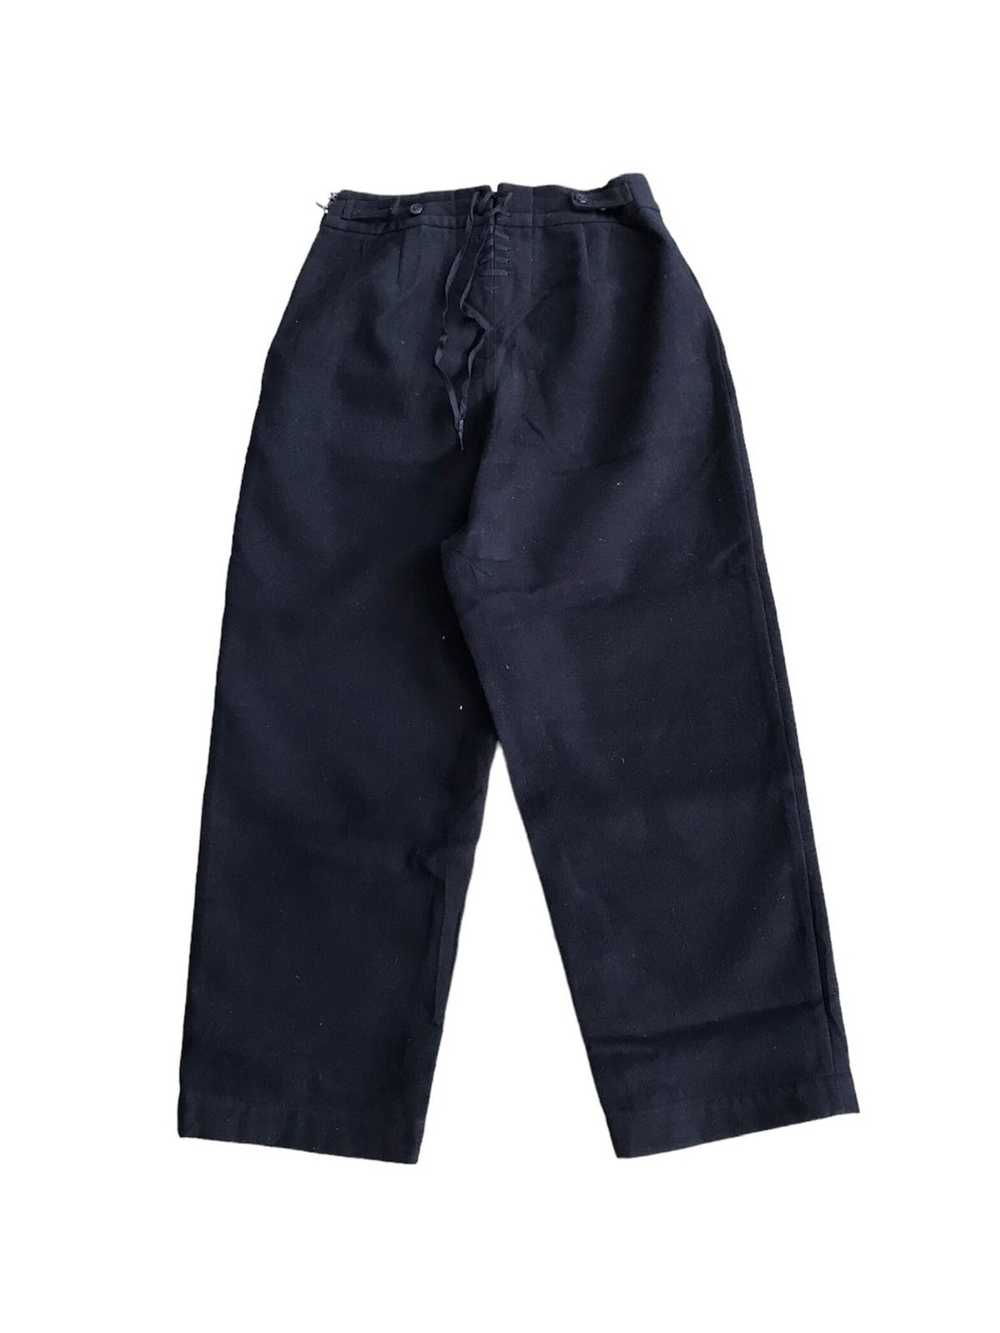 Beams Plus × Japanese Brand Beams Boy Wool Pants - image 2